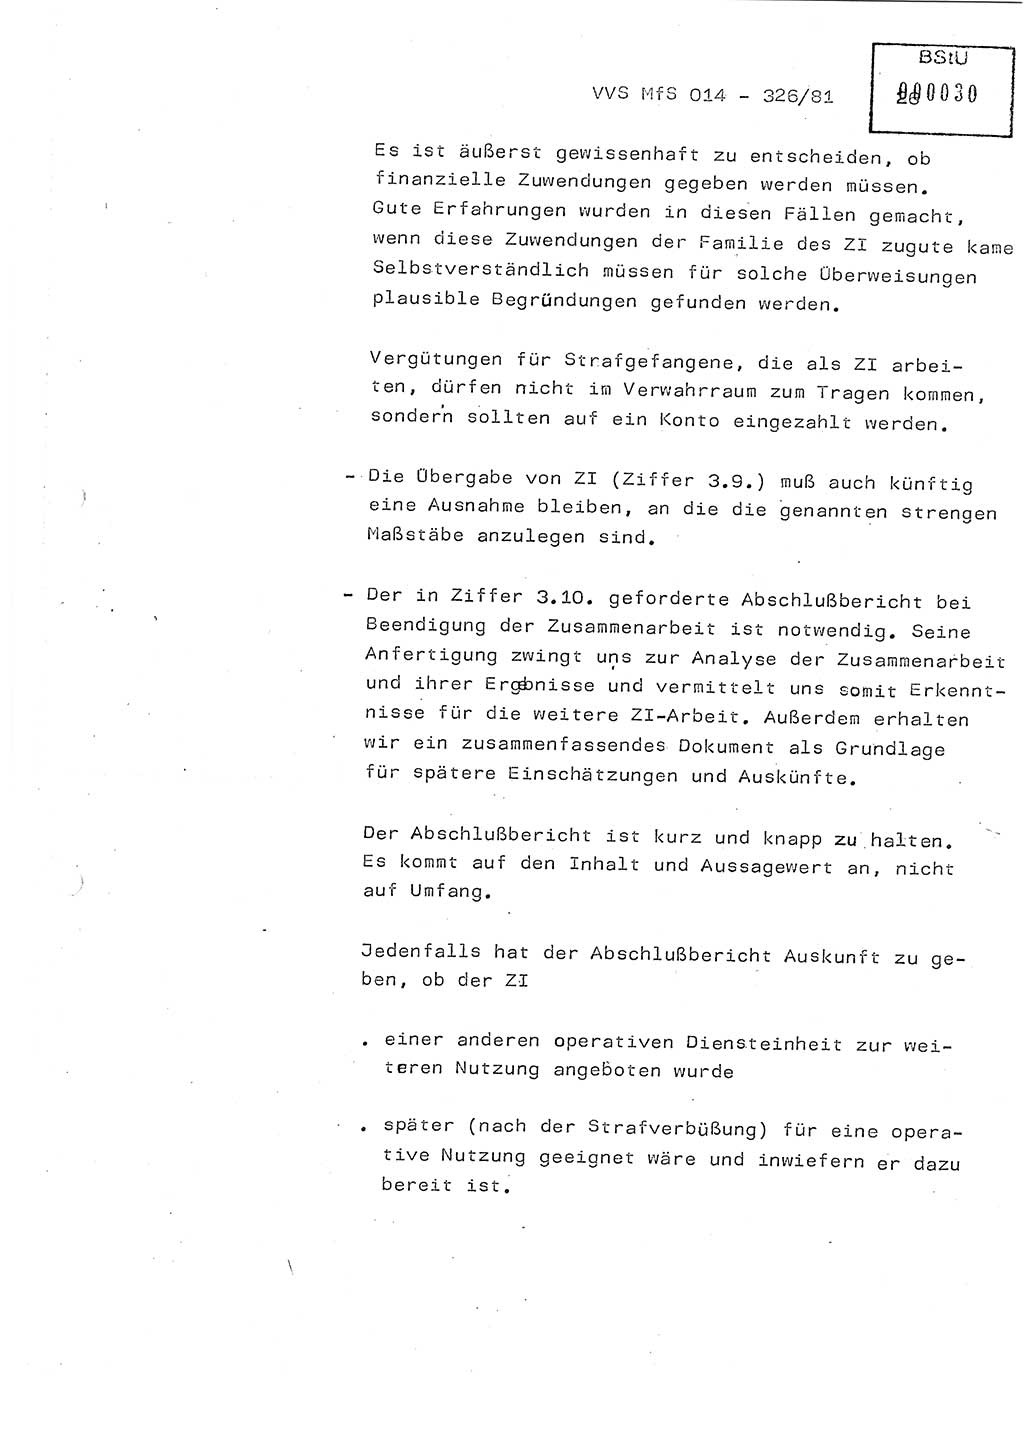 Thesen zum Einführungsvortrag für die Schulung zur Richtlinie Nr. 2/81 [zur Arbeit mit Zelleninformatoren (ZI)] des Genossen Minister (Generaloberst Erich Mielke), Ministerium für Staatssicherheit (MfS) [Deutsche Demokratische Republik (DDR)], Hauptabteilung (HA) Ⅸ, Vertrauliche Verschlußsache (VVS) 014-326/81, Berlin 1981, Seite 26 (Th. Sch. RL 2/81 MfS DDR HA Ⅸ VVS 014-326/81 1981, S. 26)